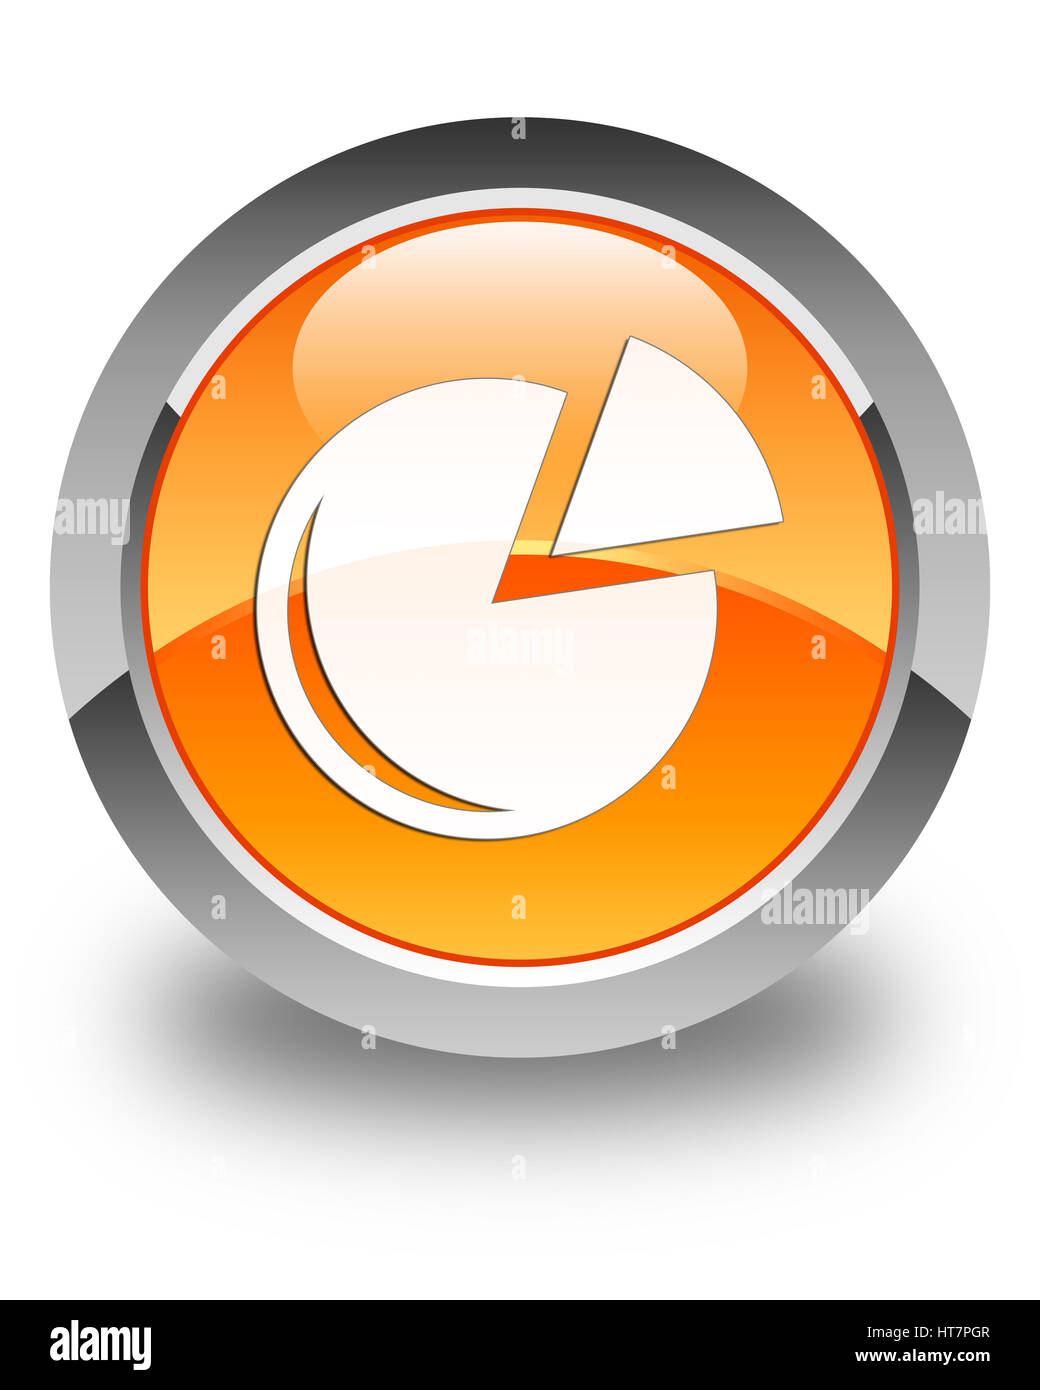 Icona grafico isolato su arancio lucido pulsante rotondo illustrazione astratta Foto Stock